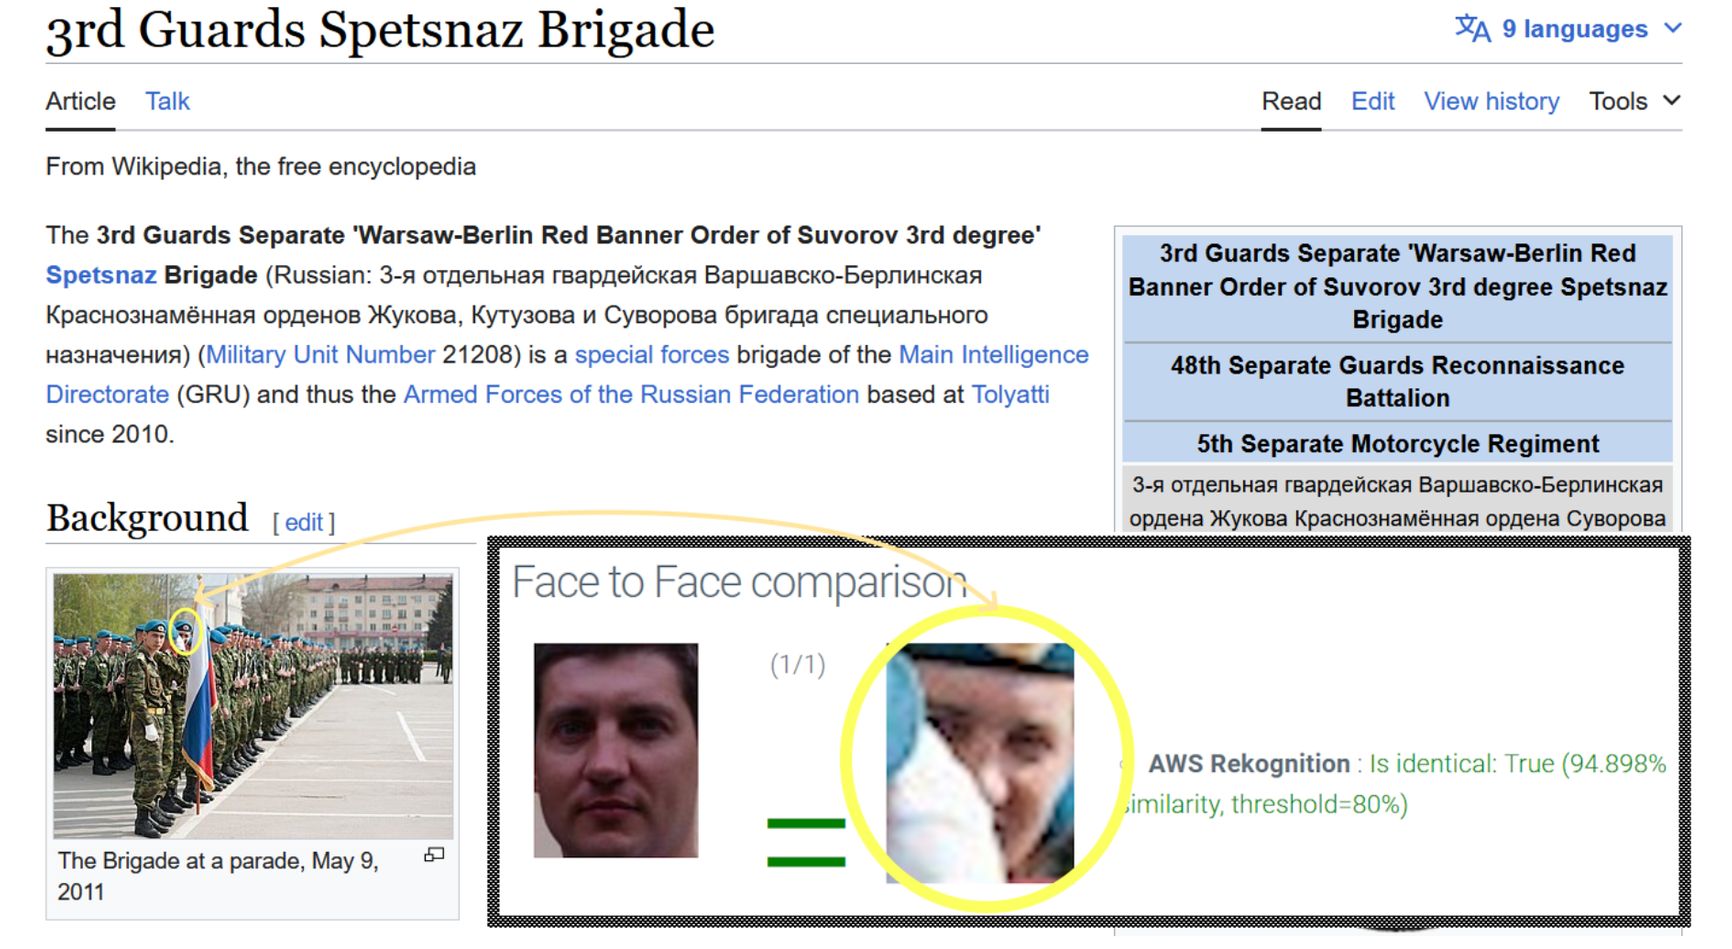 Родионову было бы проще скрыть свою принадлежность к спецназу ГРУ, если бы его лицо не светилось на странице в Википедии в статье о его бригаде